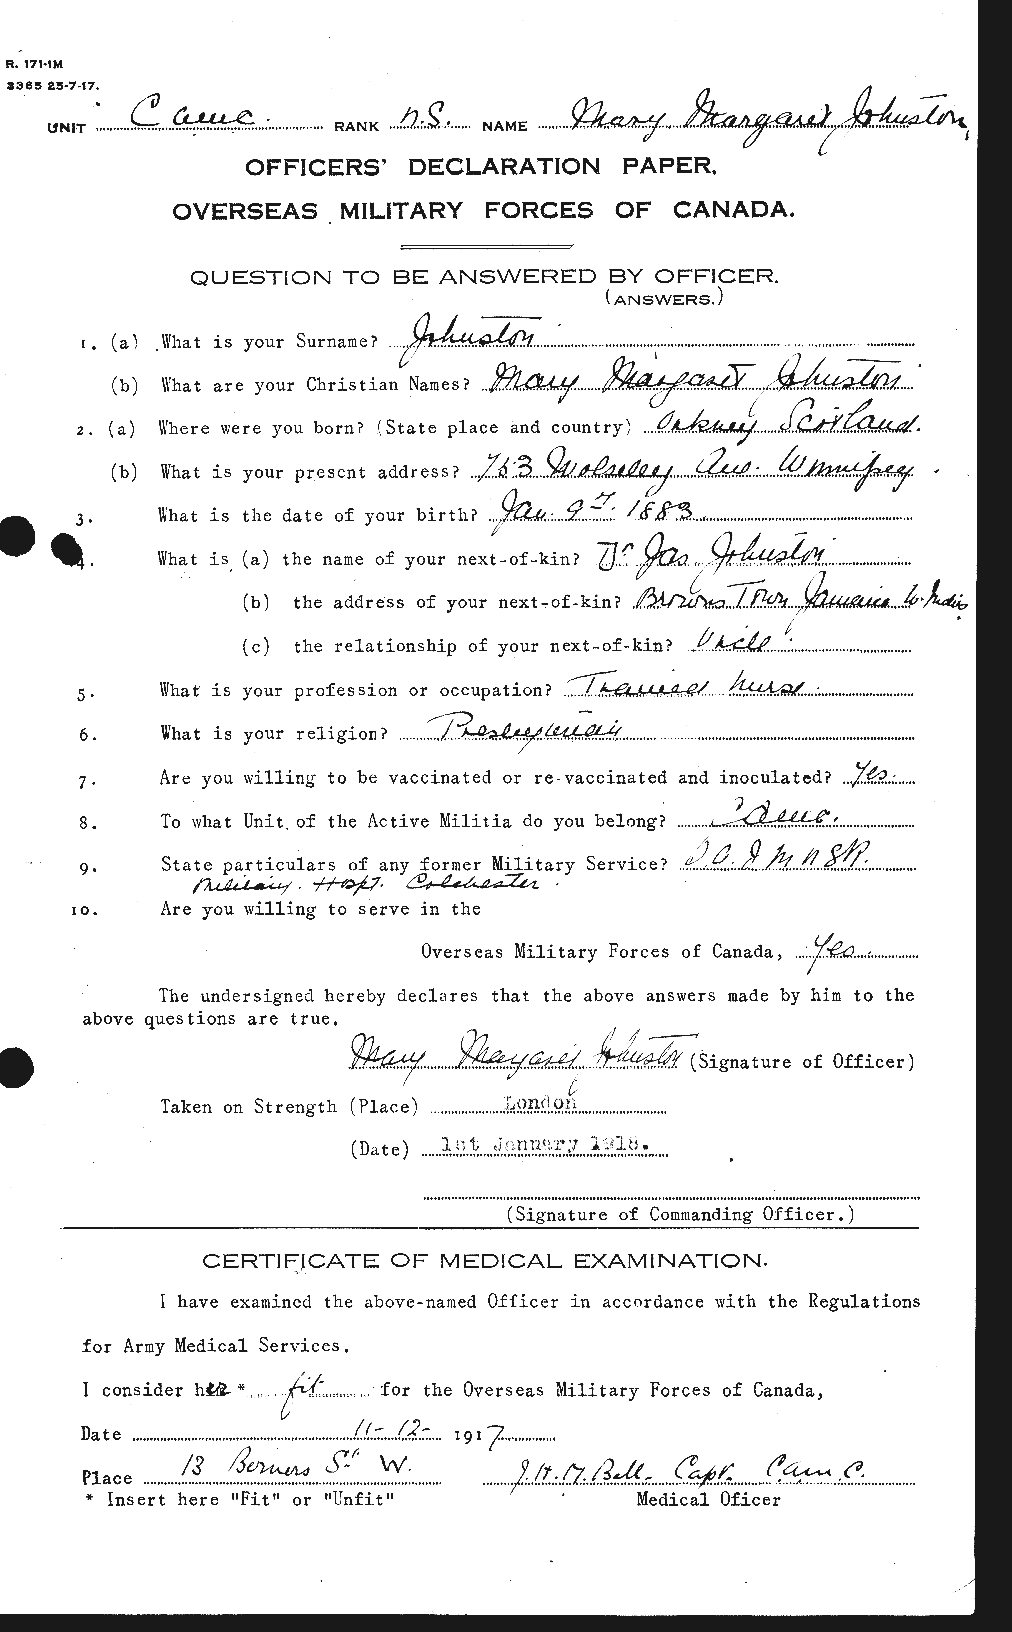 Dossiers du Personnel de la Première Guerre mondiale - CEC 422976a